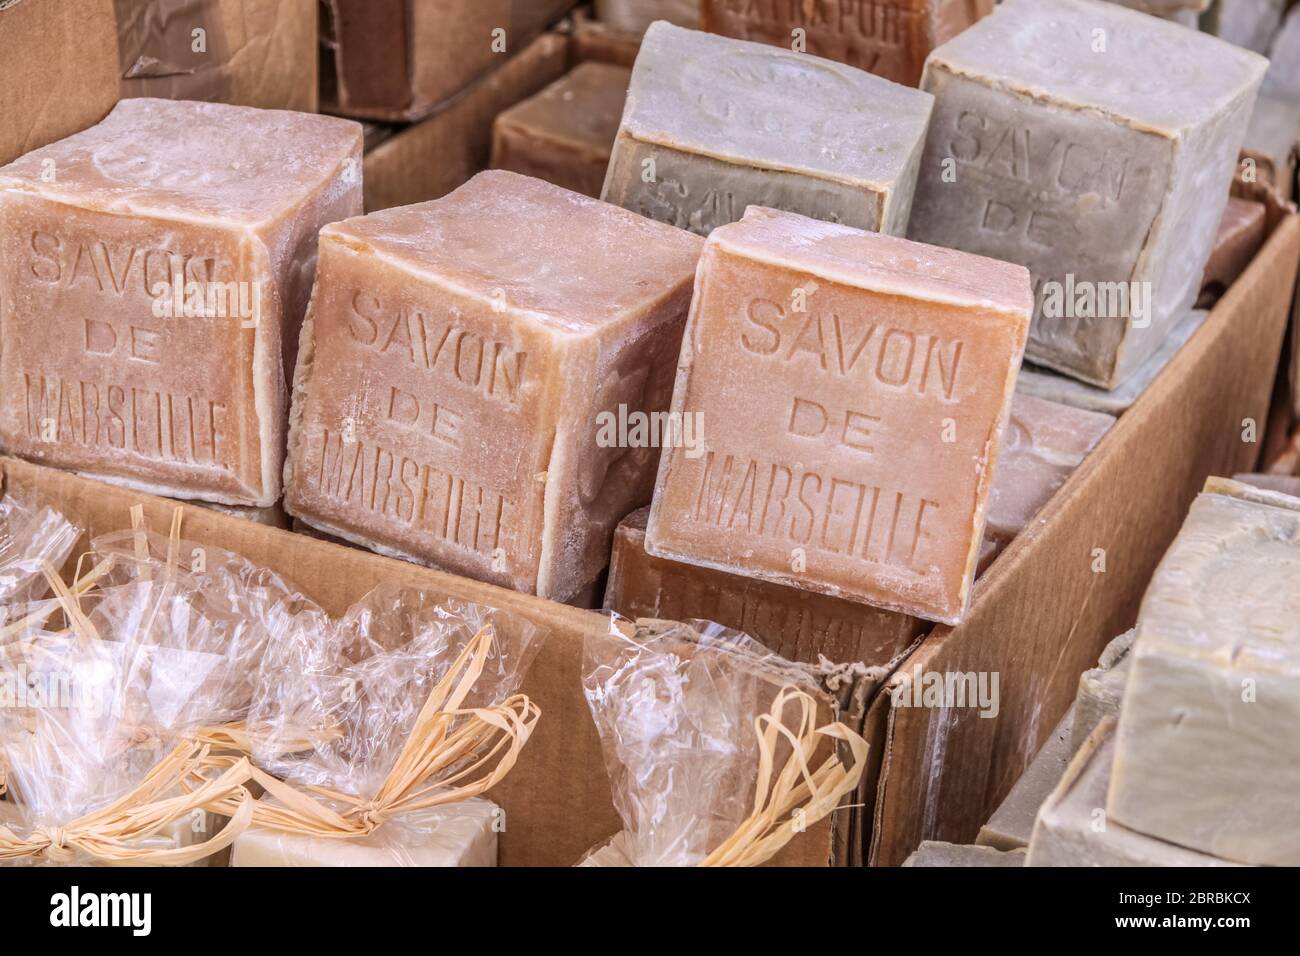 Jabones rústicos en el pueblo de Gordes, Provenza, Francia Foto de stock